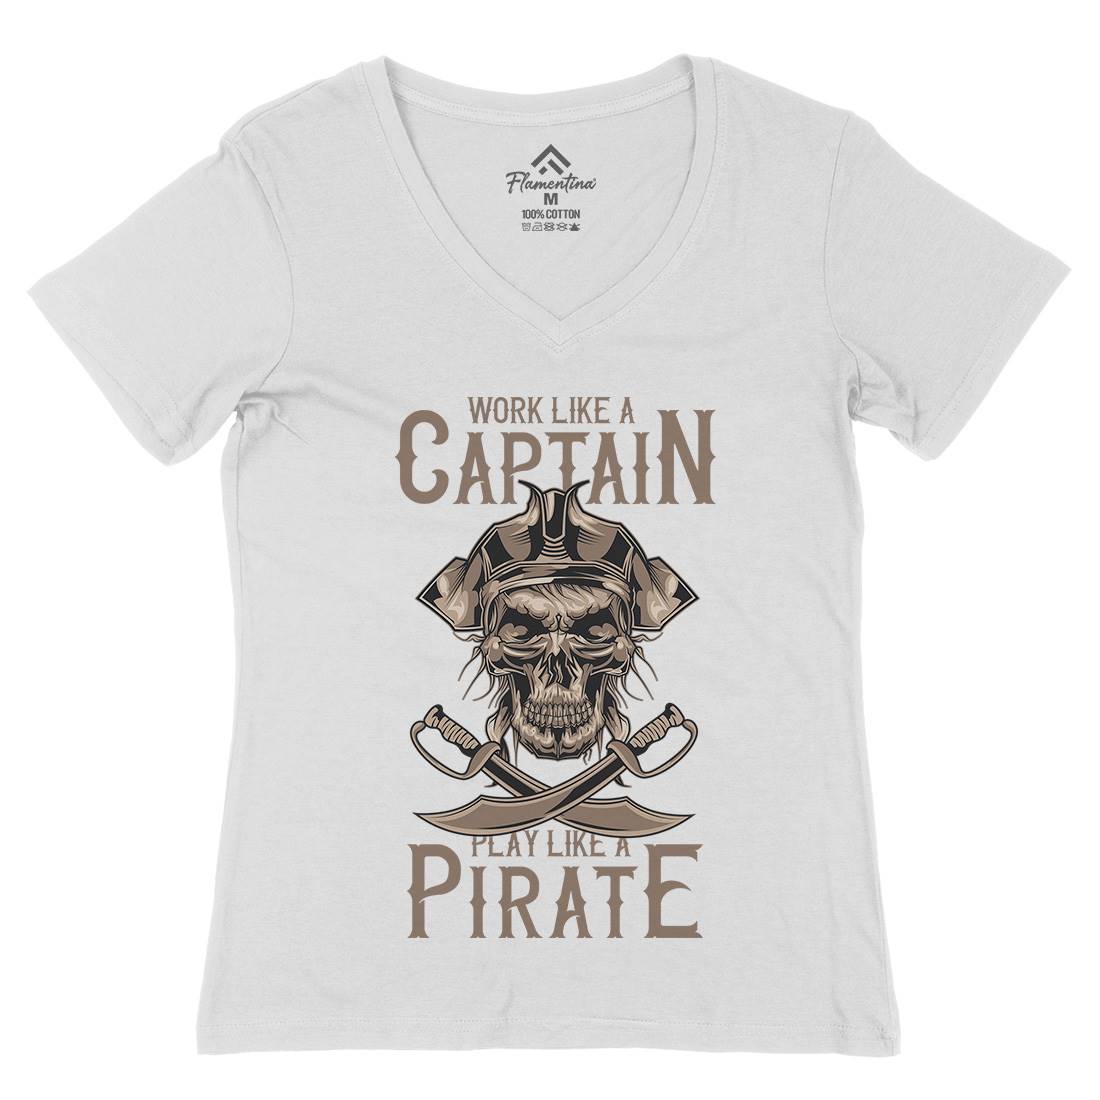 Pirate Womens Organic V-Neck T-Shirt Navy B162